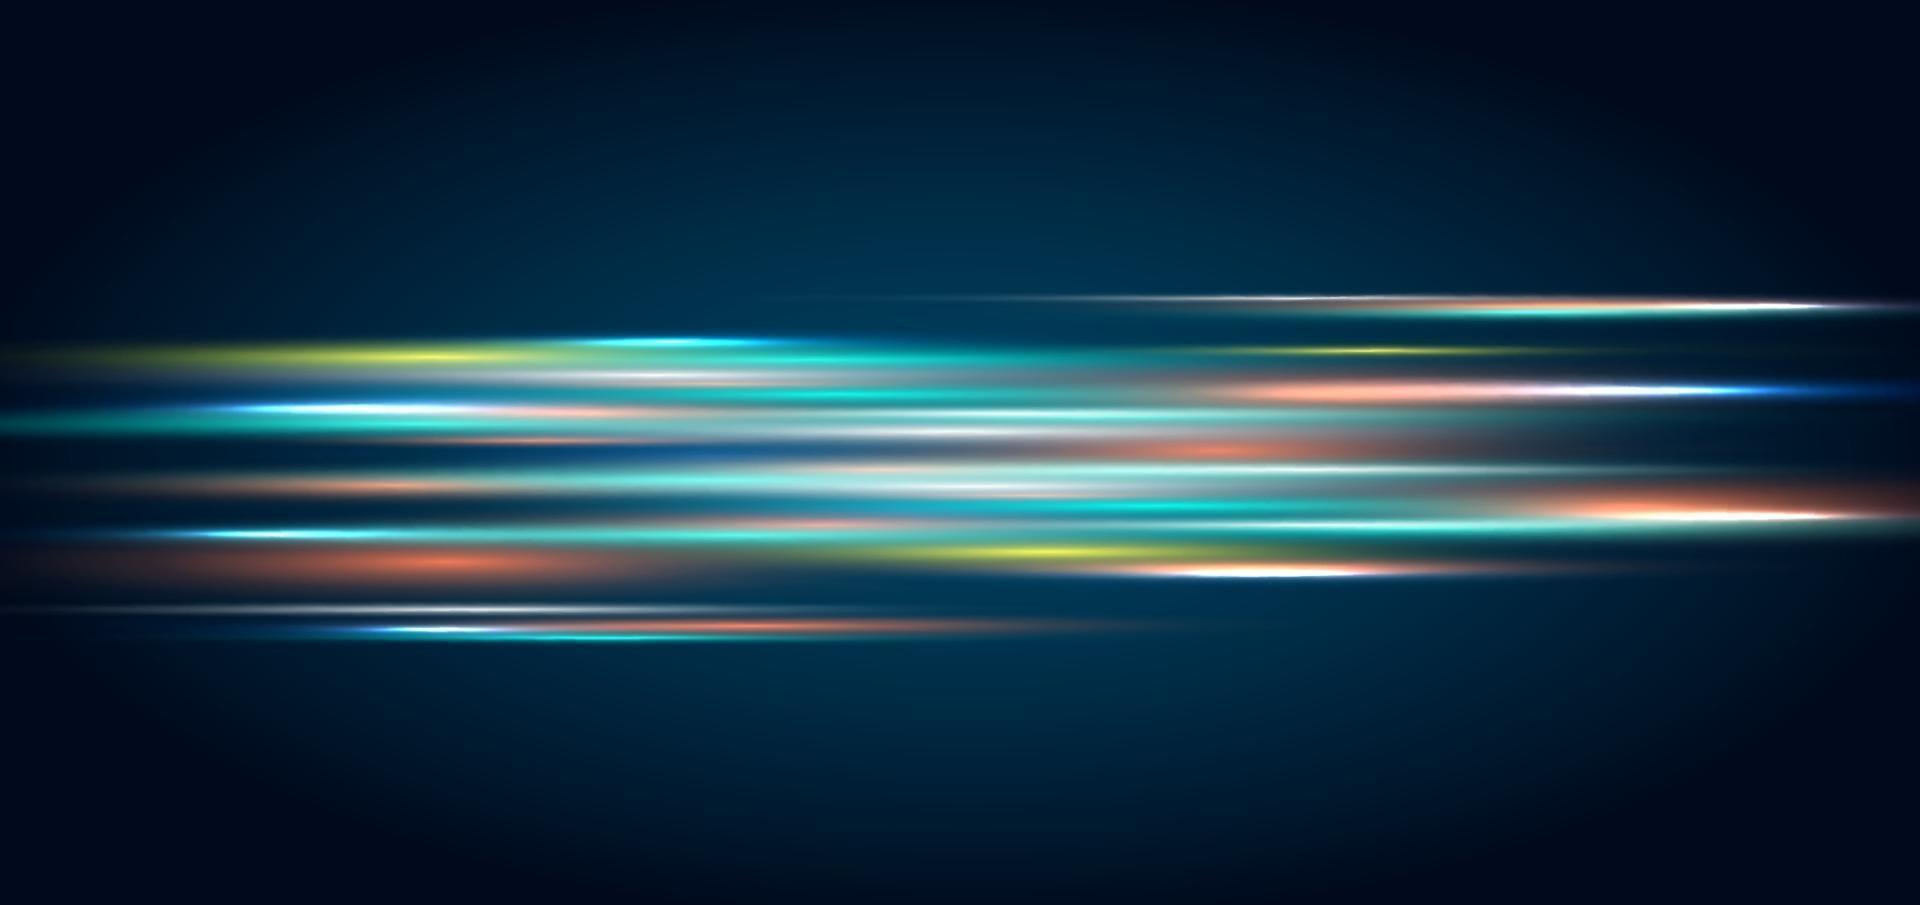 abstract technologieconcept verlichtingseffect en strepen. bewegende snelle horizontale lijnen op donkerblauwe achtergrond vector